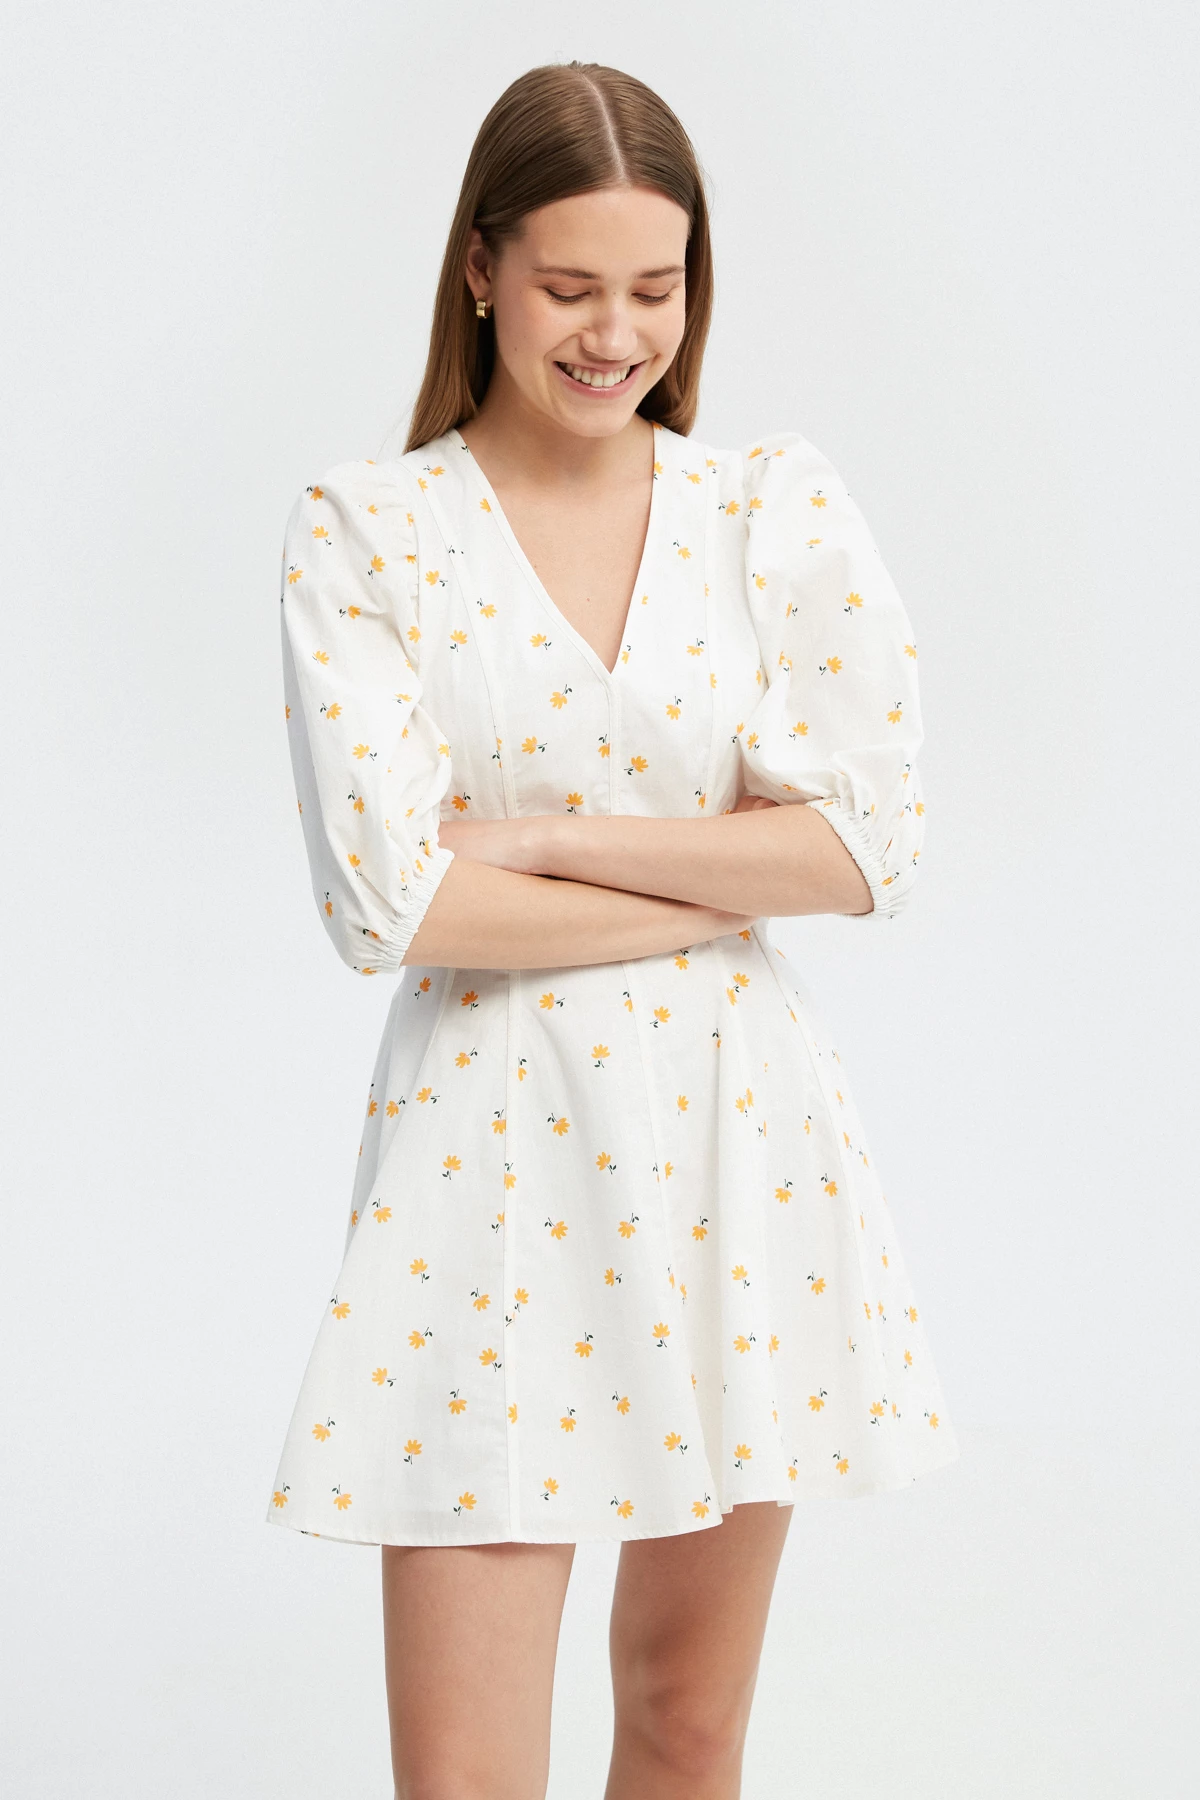 Короткое белое платье из хлопка в авторский принт желтые цветы, фото 1